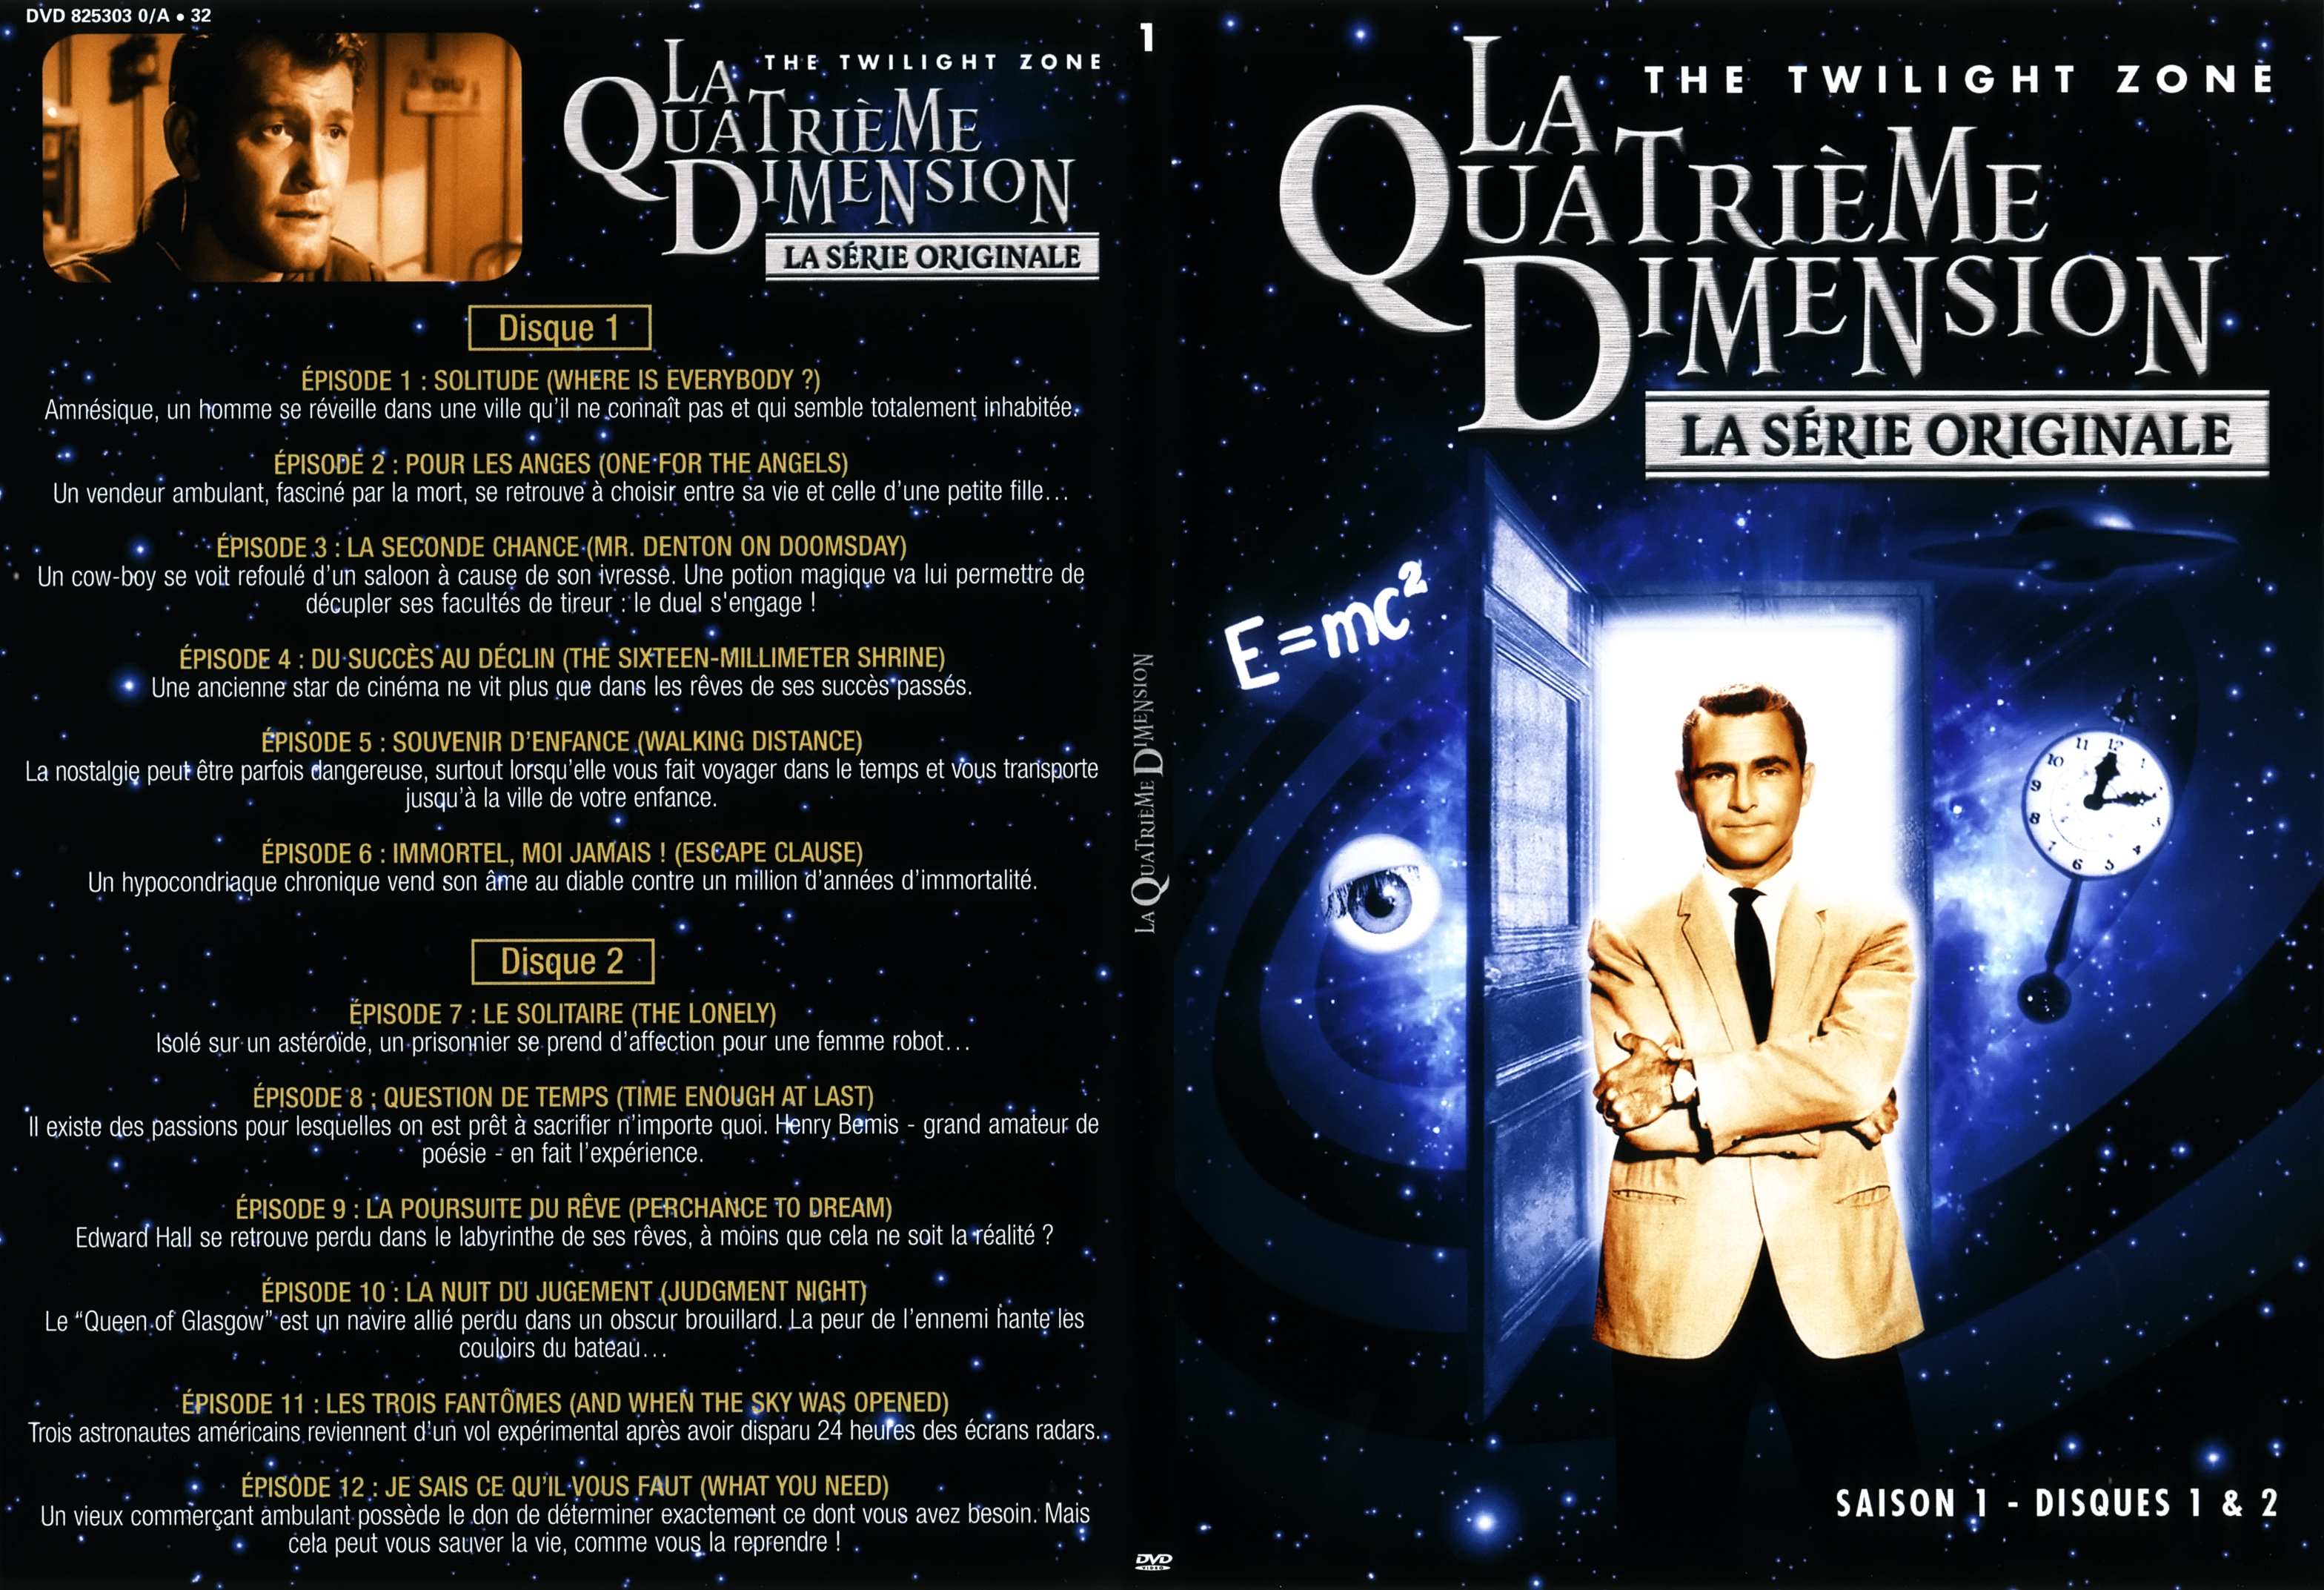 Jaquette DVD La quatrieme dimension saison 1 vol 1